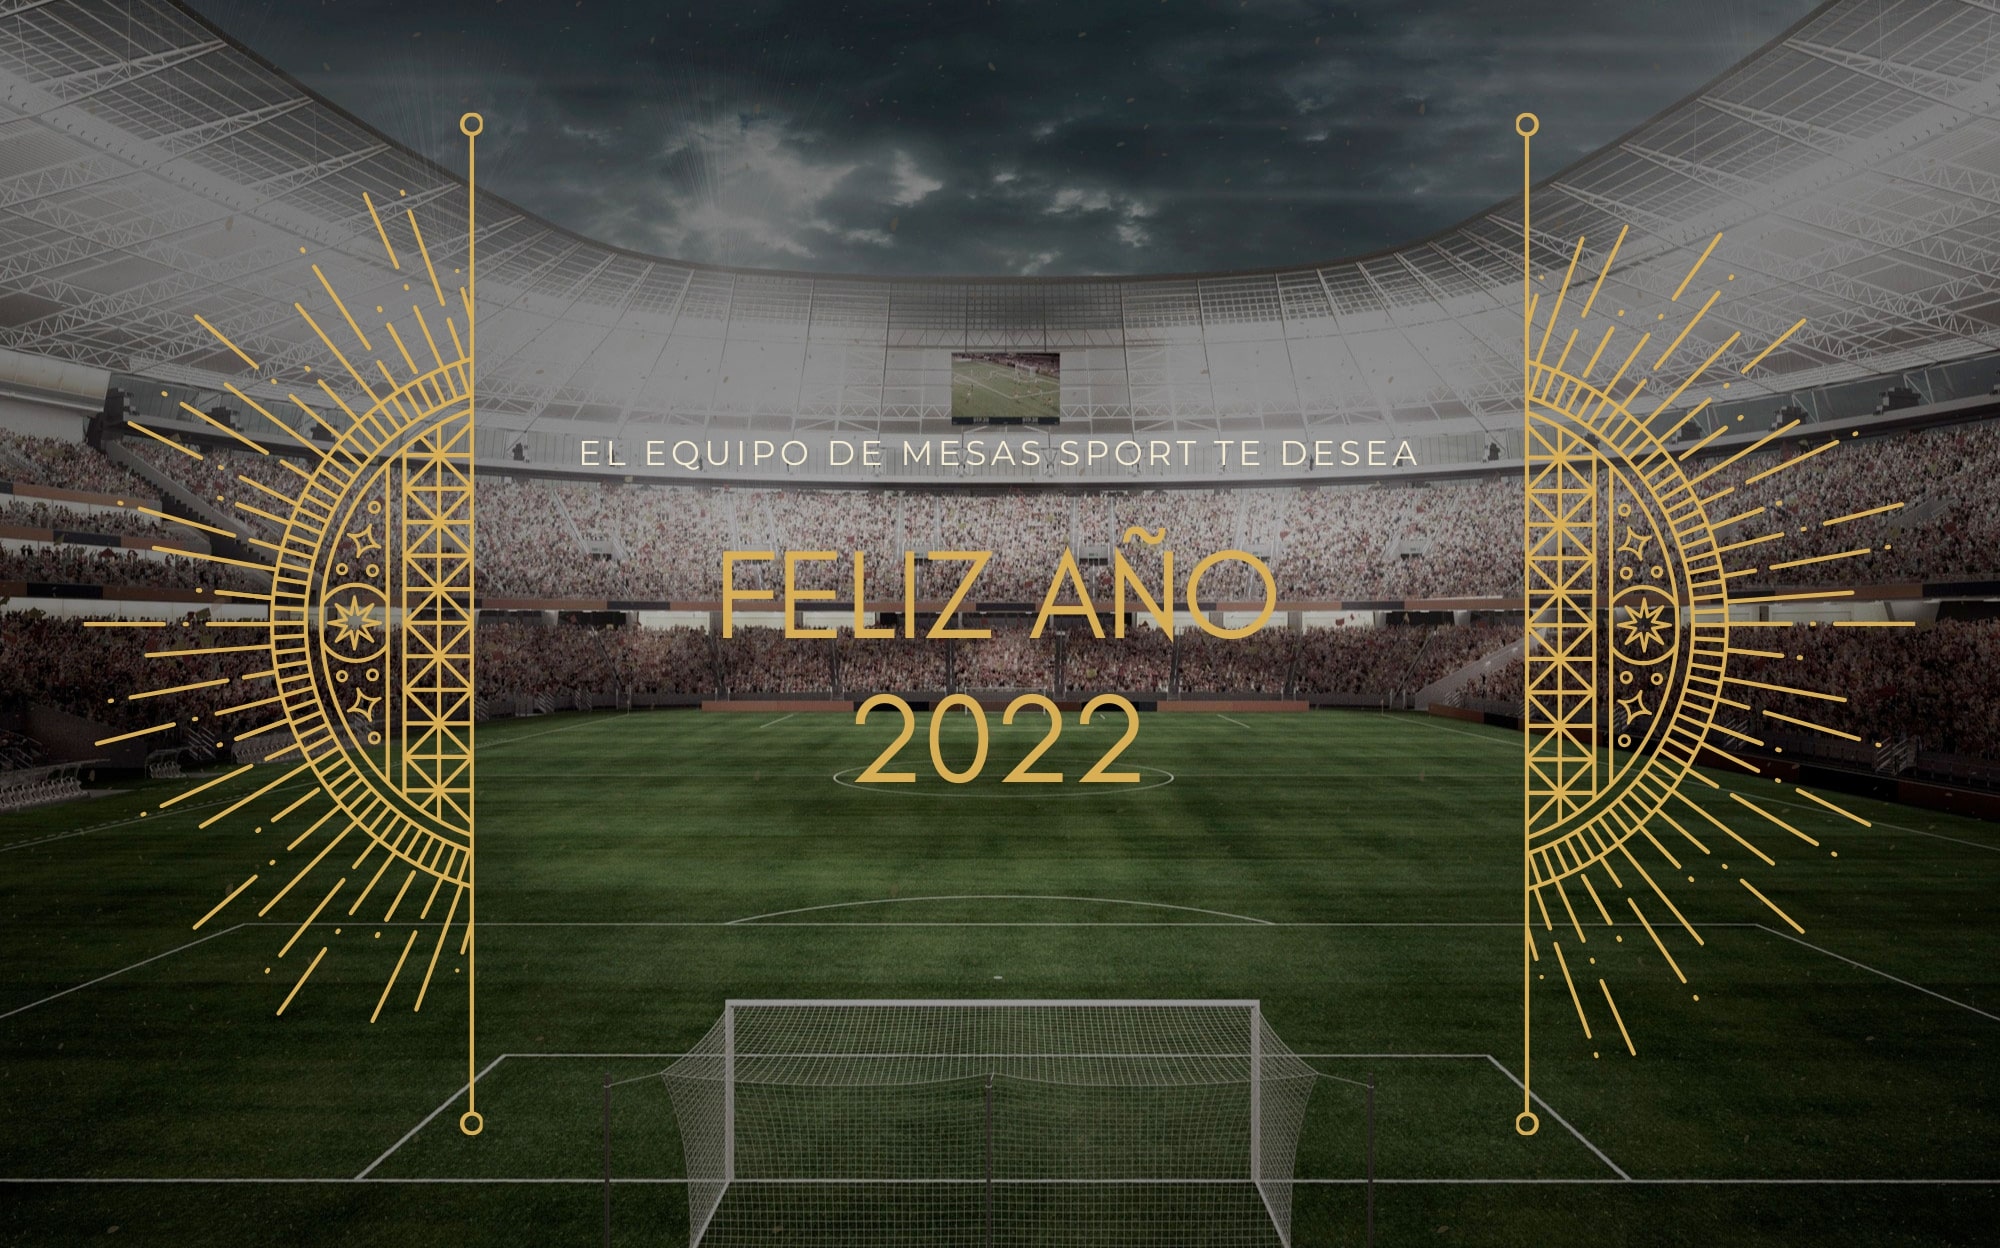 Mesas Sport te desea Feliz Año 2022